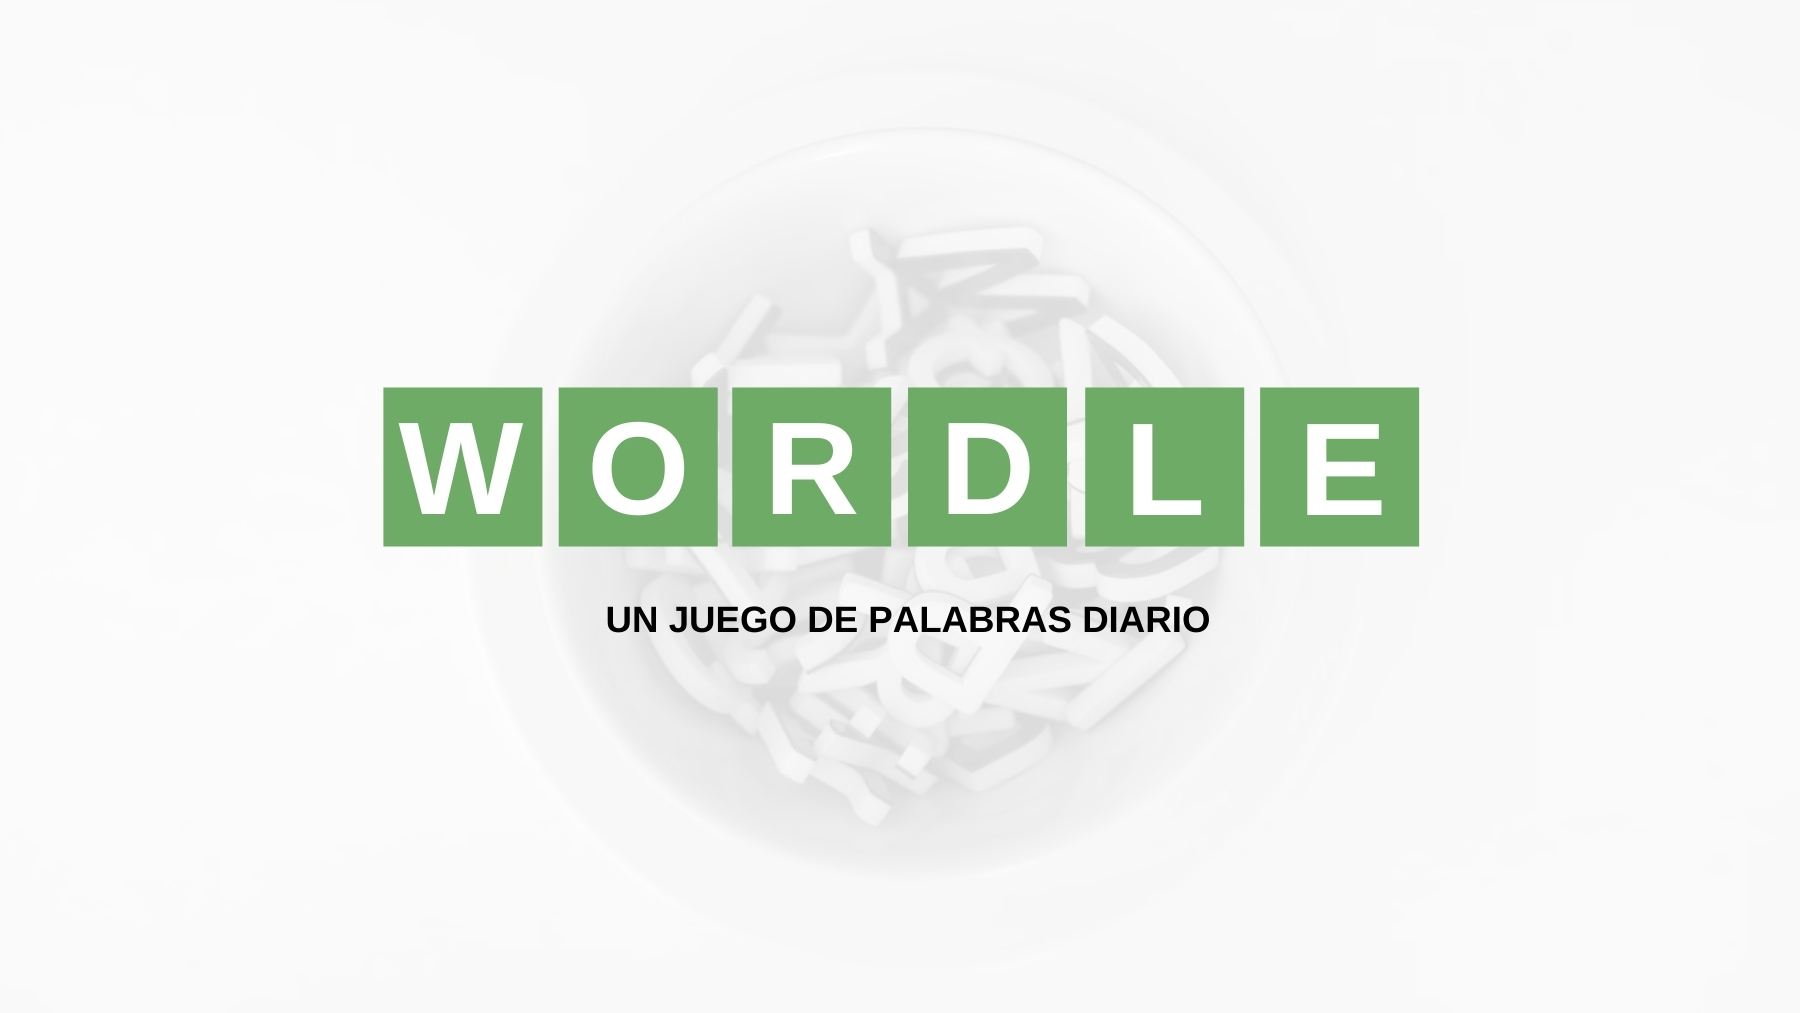 Solución palabra Wordle español, científico y con tildes hoy, sábado 16 de julio de 2022